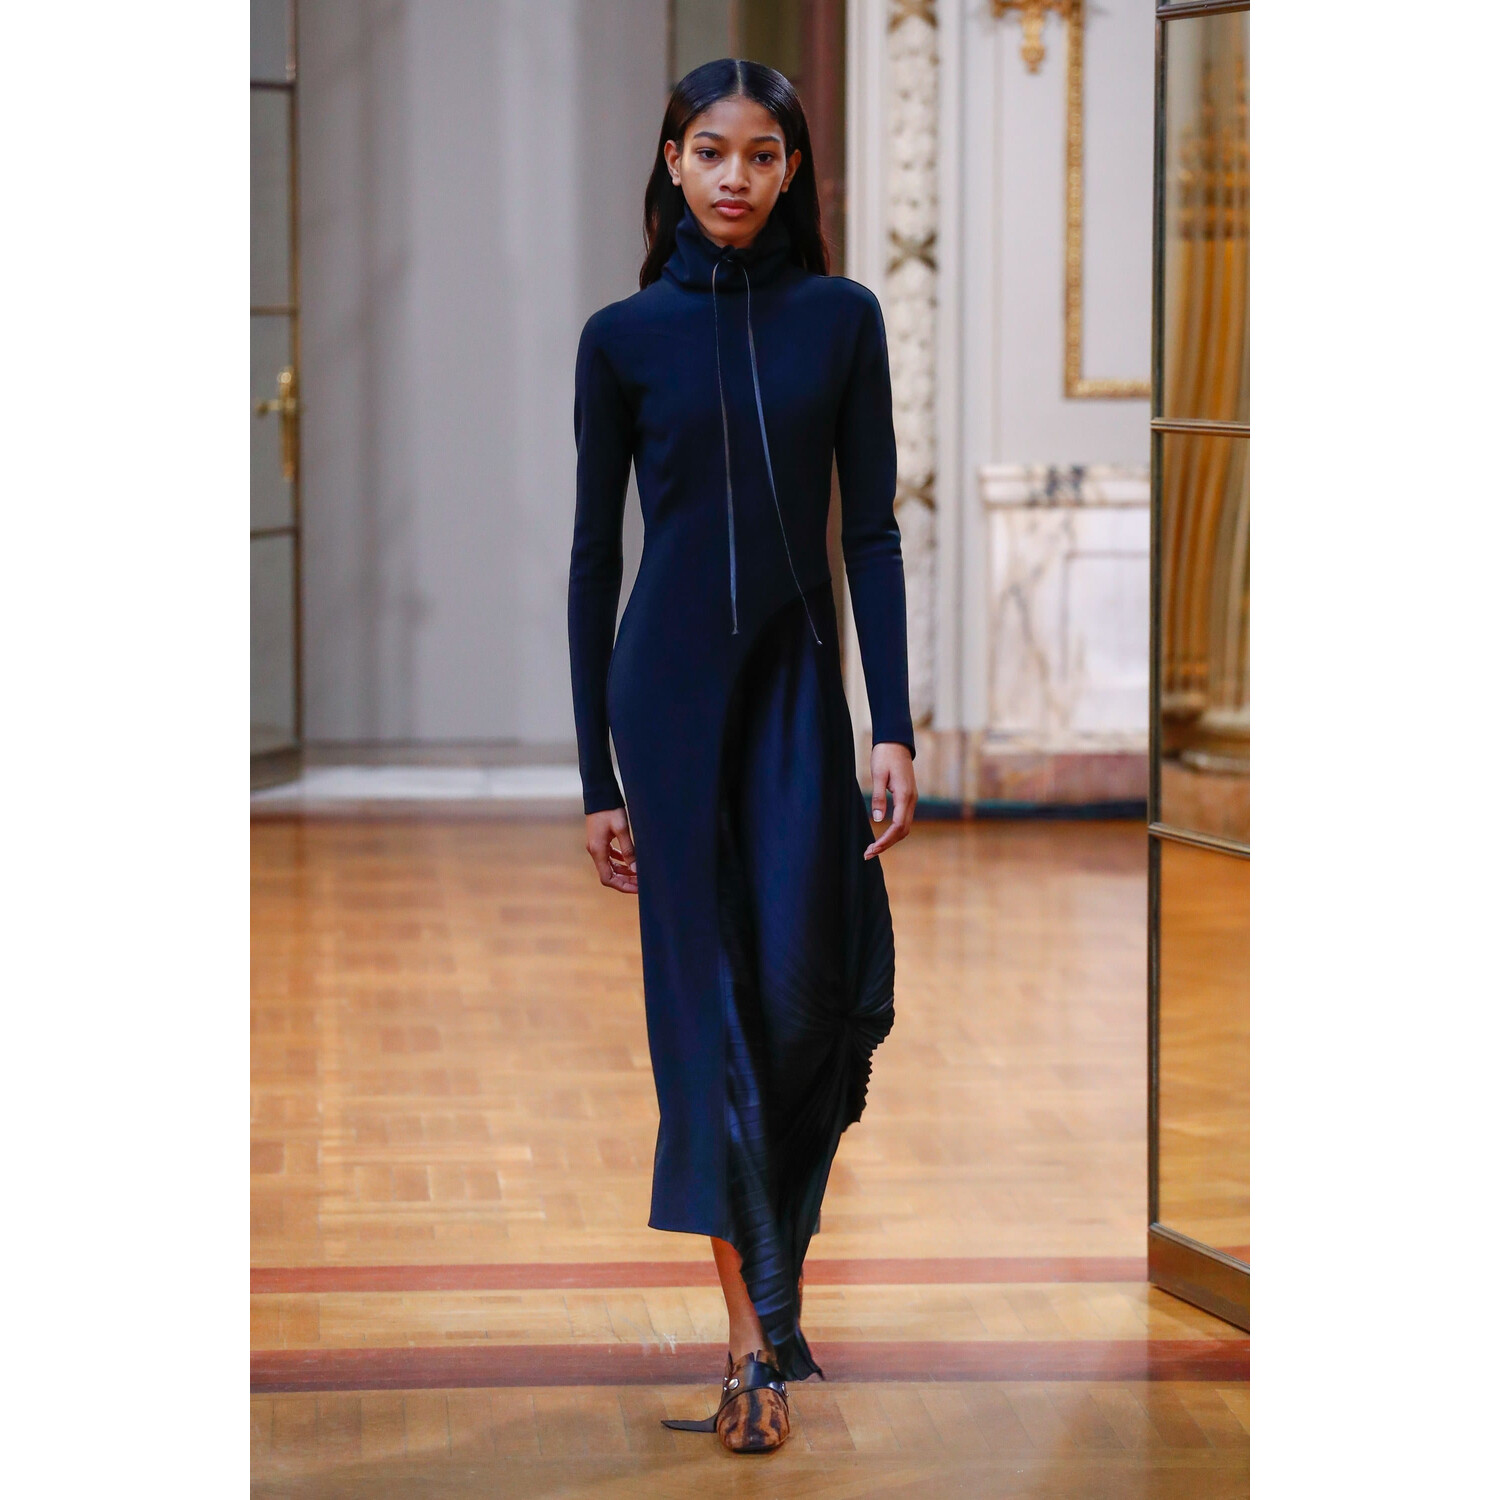 Фото Victoria Beckham Fall 2018 Ready-to-Wear Виктория Бекхэм осень зима 2018 коллекция неделя моды в Нью Йорке Mainstyles